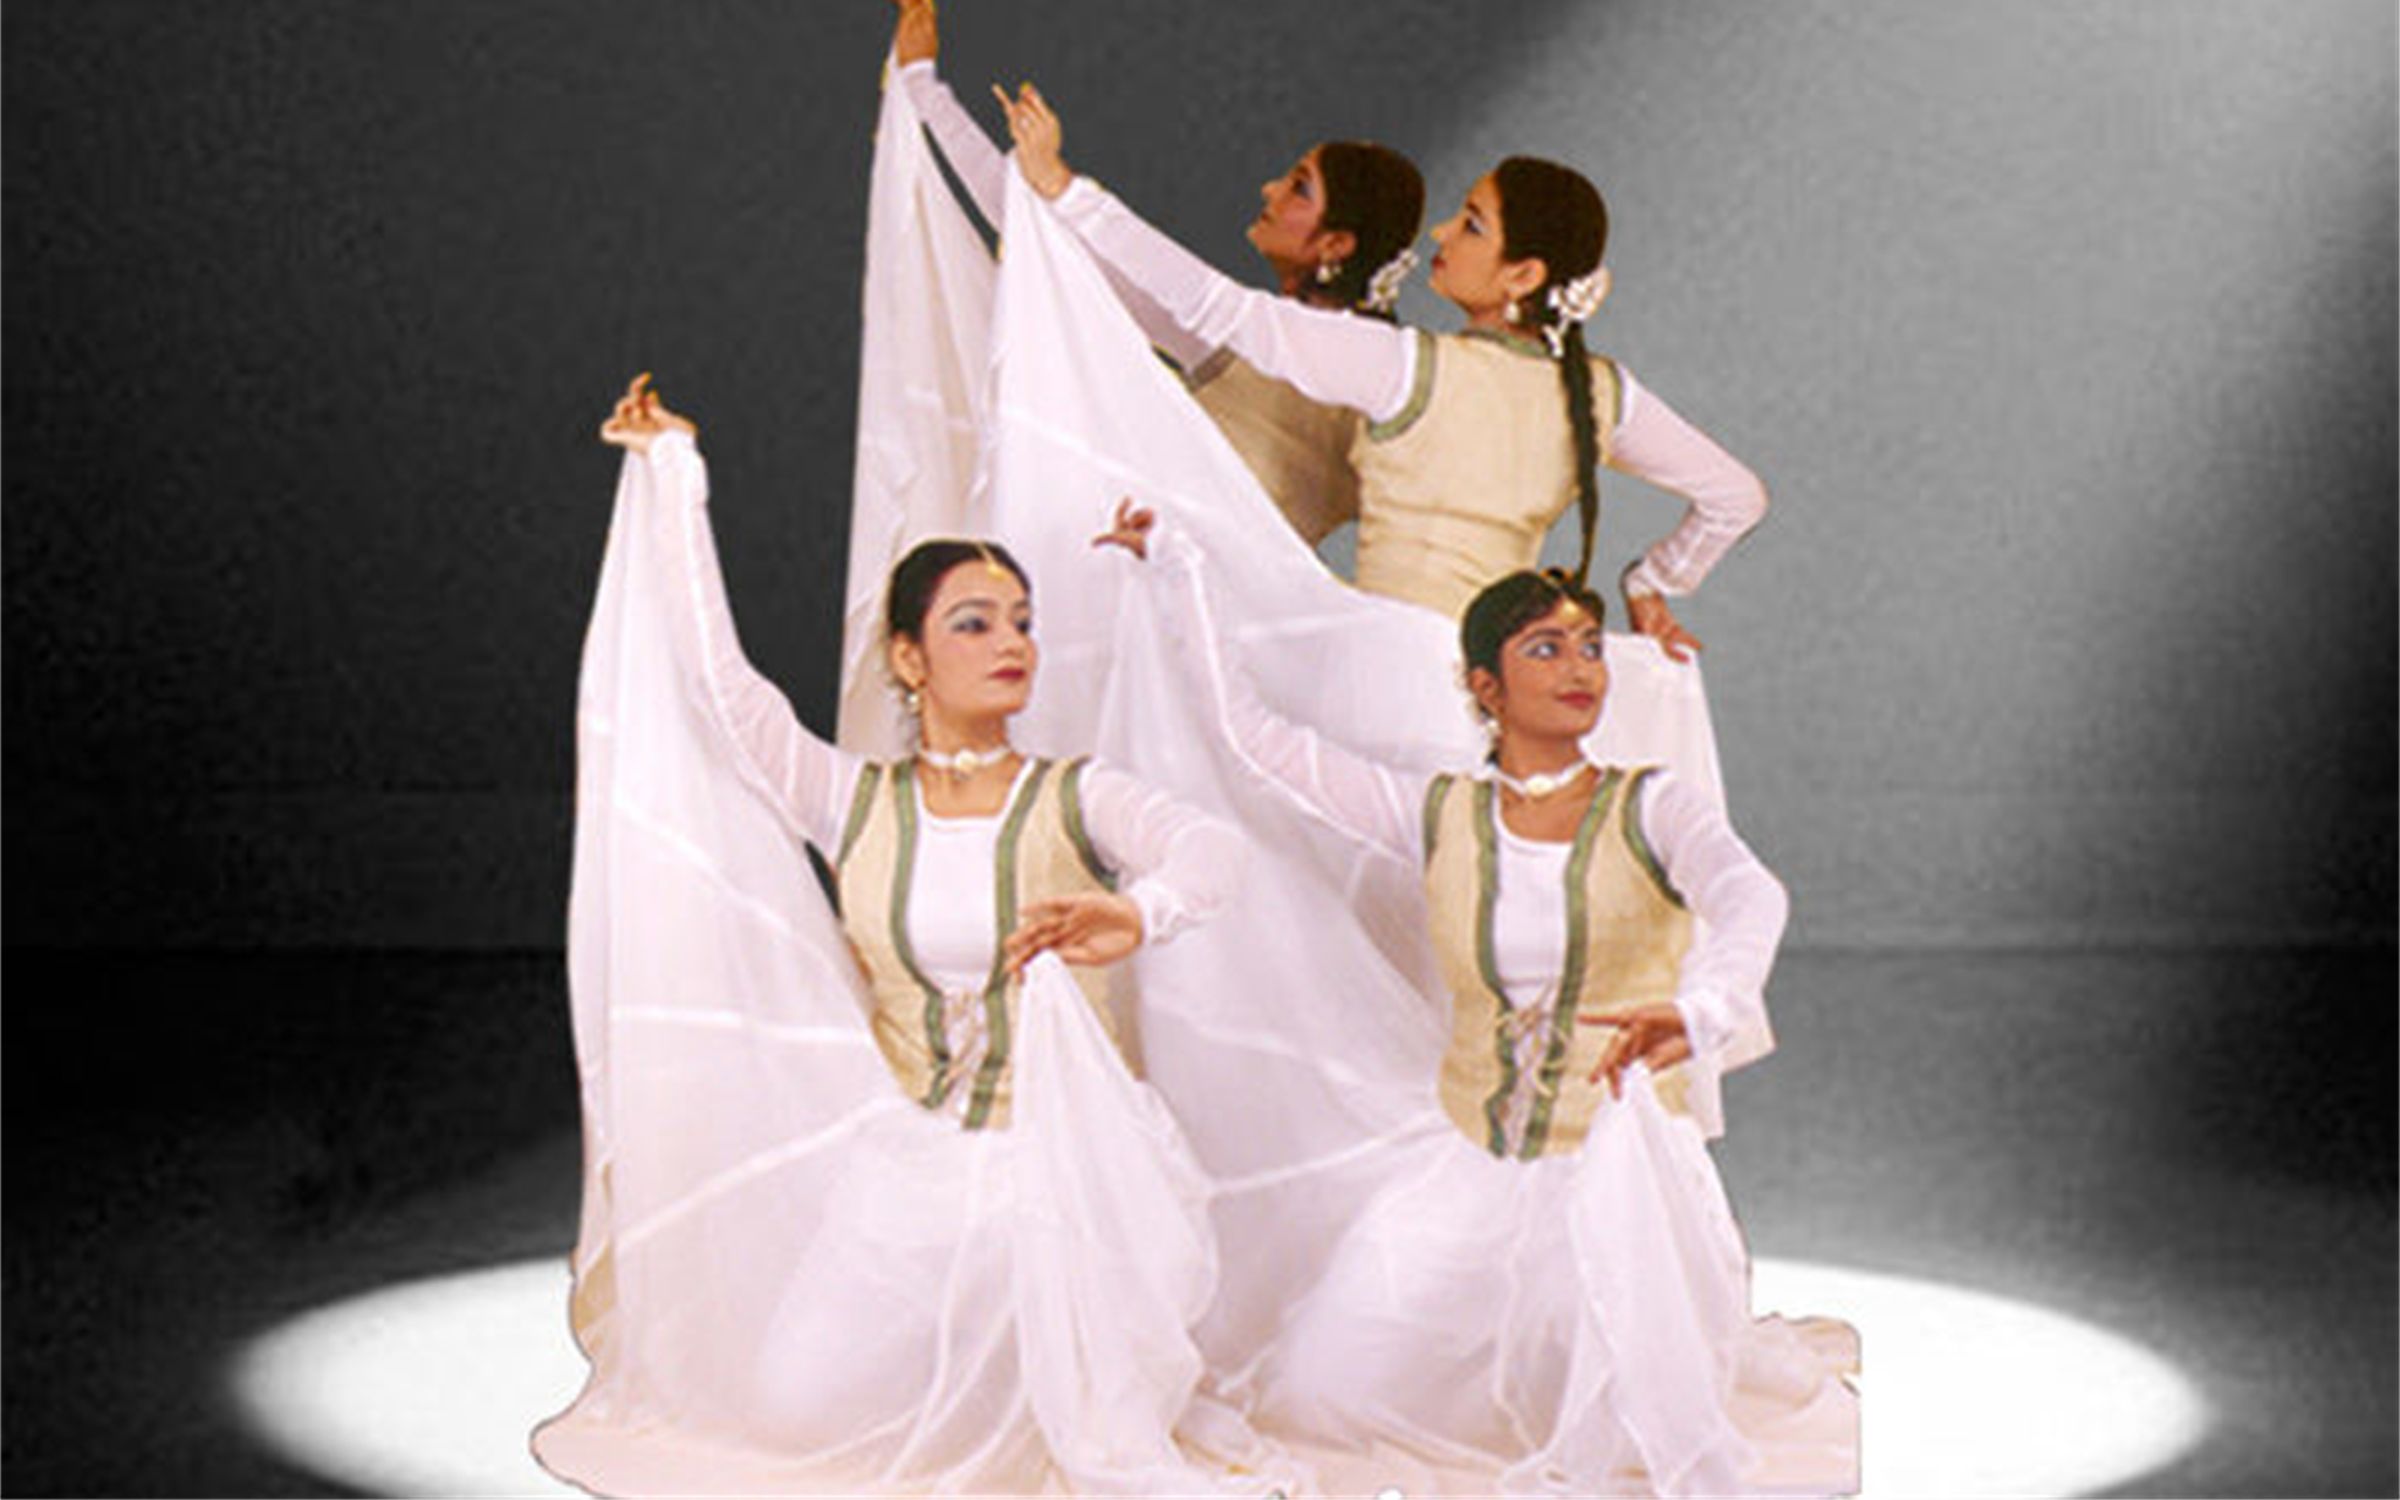 印度舞蹈家Srinidhi Chidambaram的婆罗多舞 Bharatanatyam_三次元舞蹈_舞蹈_bilibili_哔哩哔哩